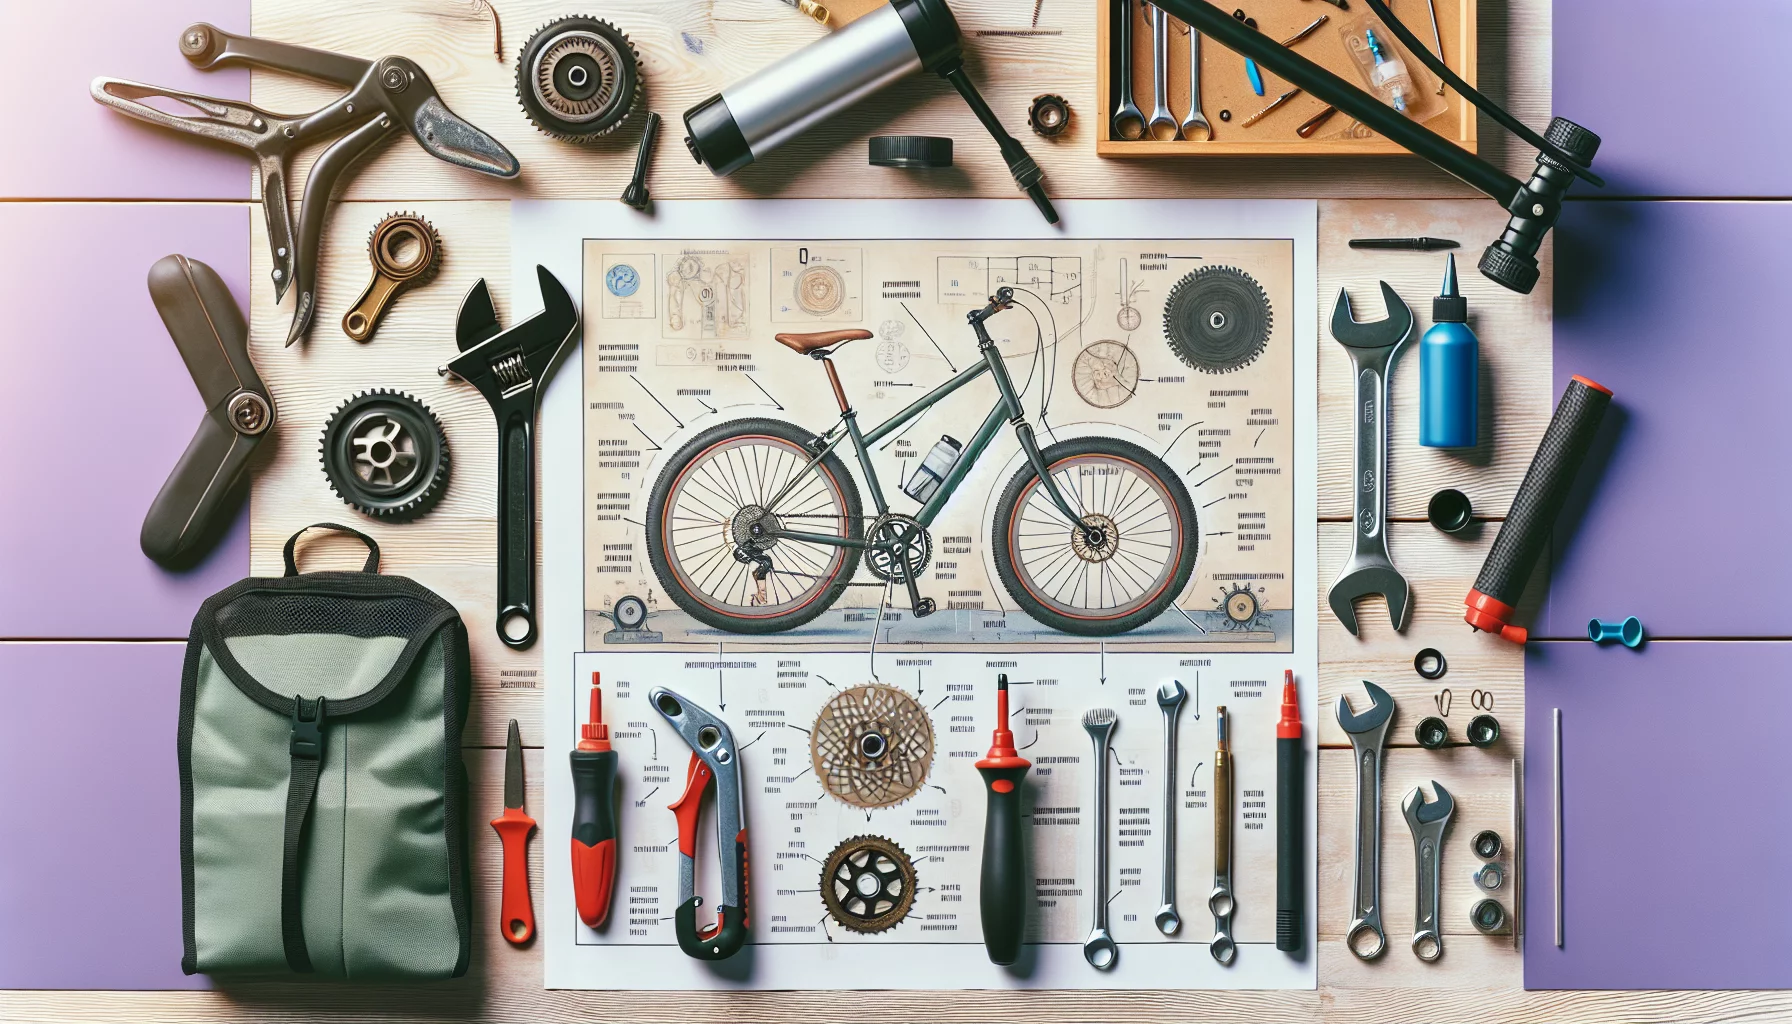 Guide de réparation de vélo à domicile : entretien de base pour cyclistes amateurs
